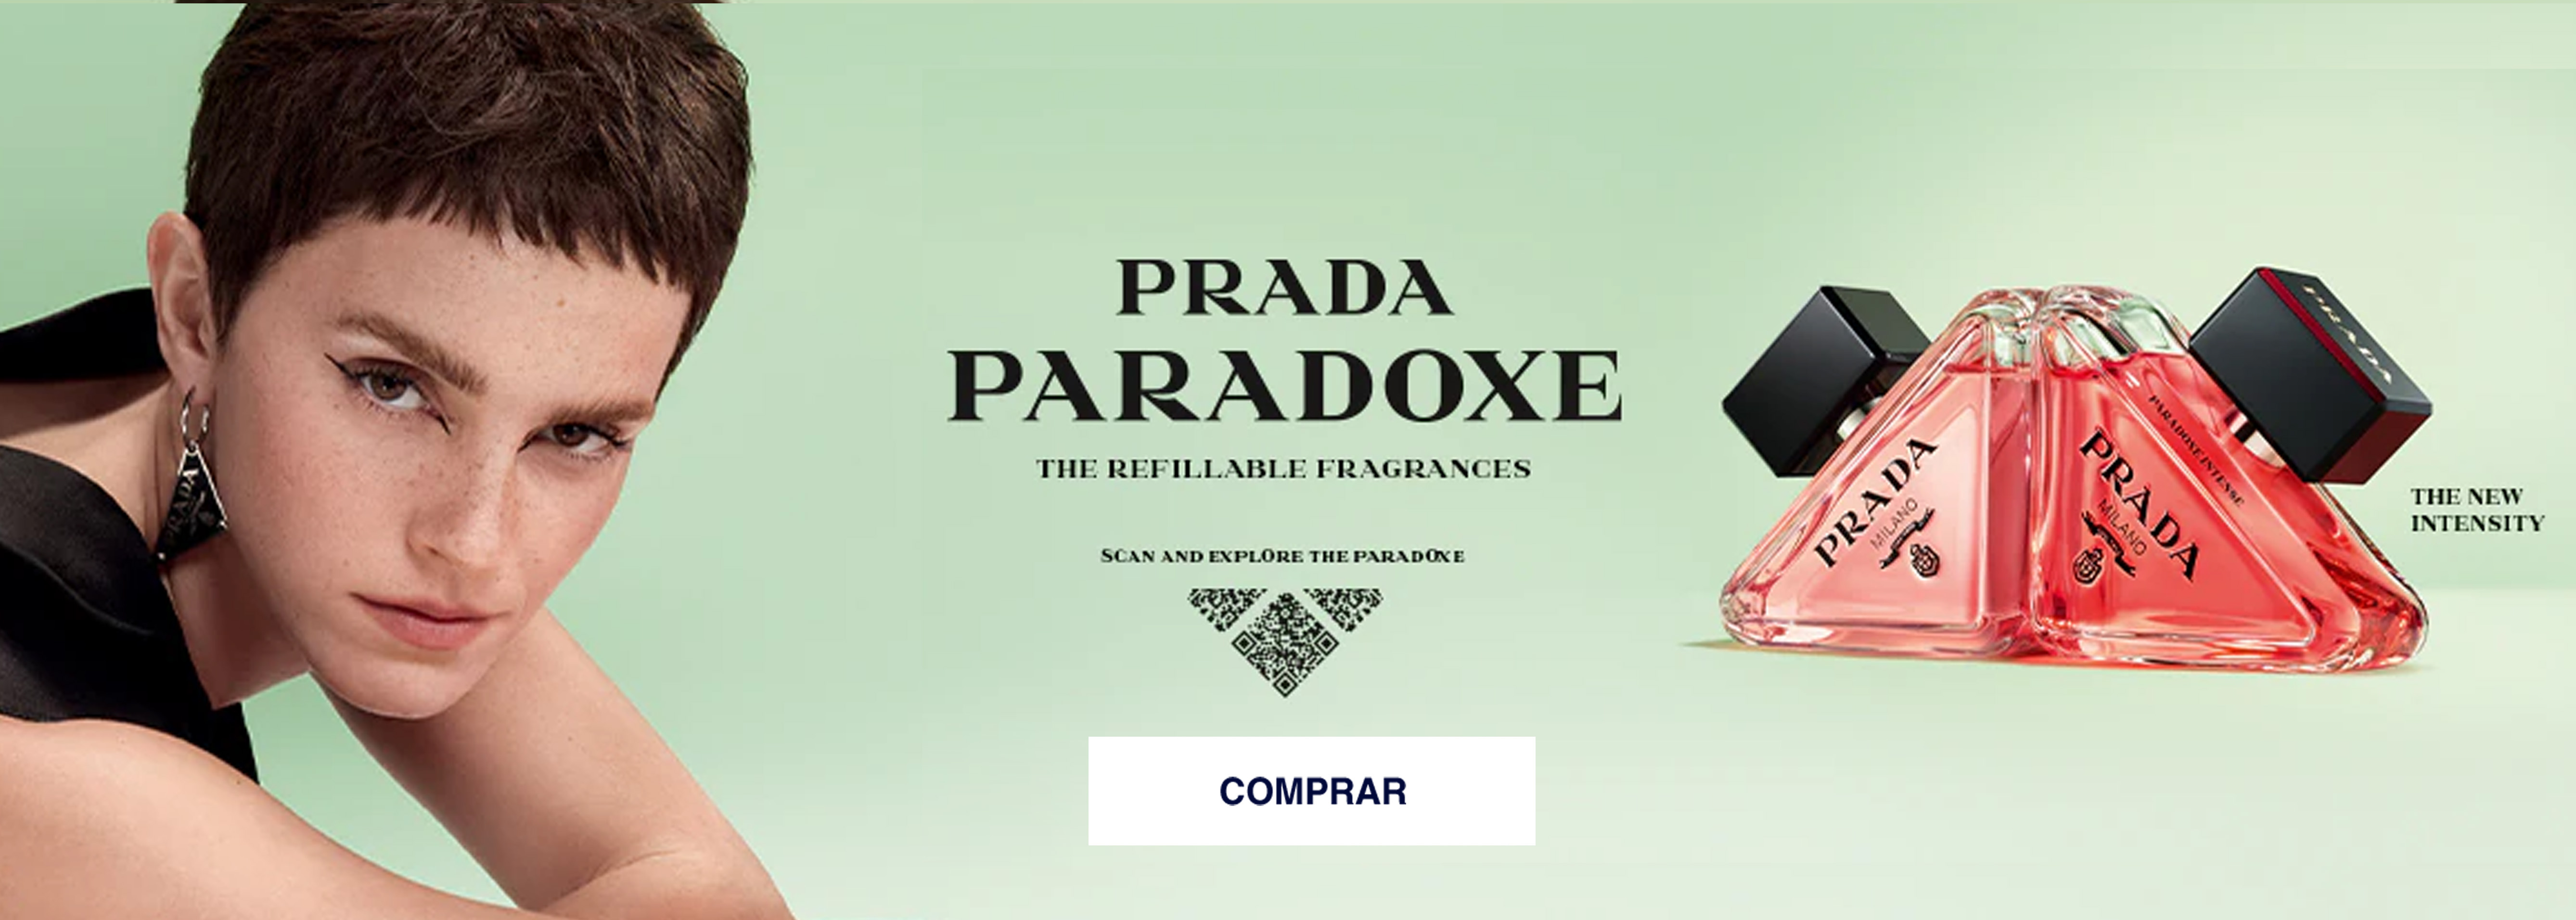 PRADA_PARADOXE_INTENSE